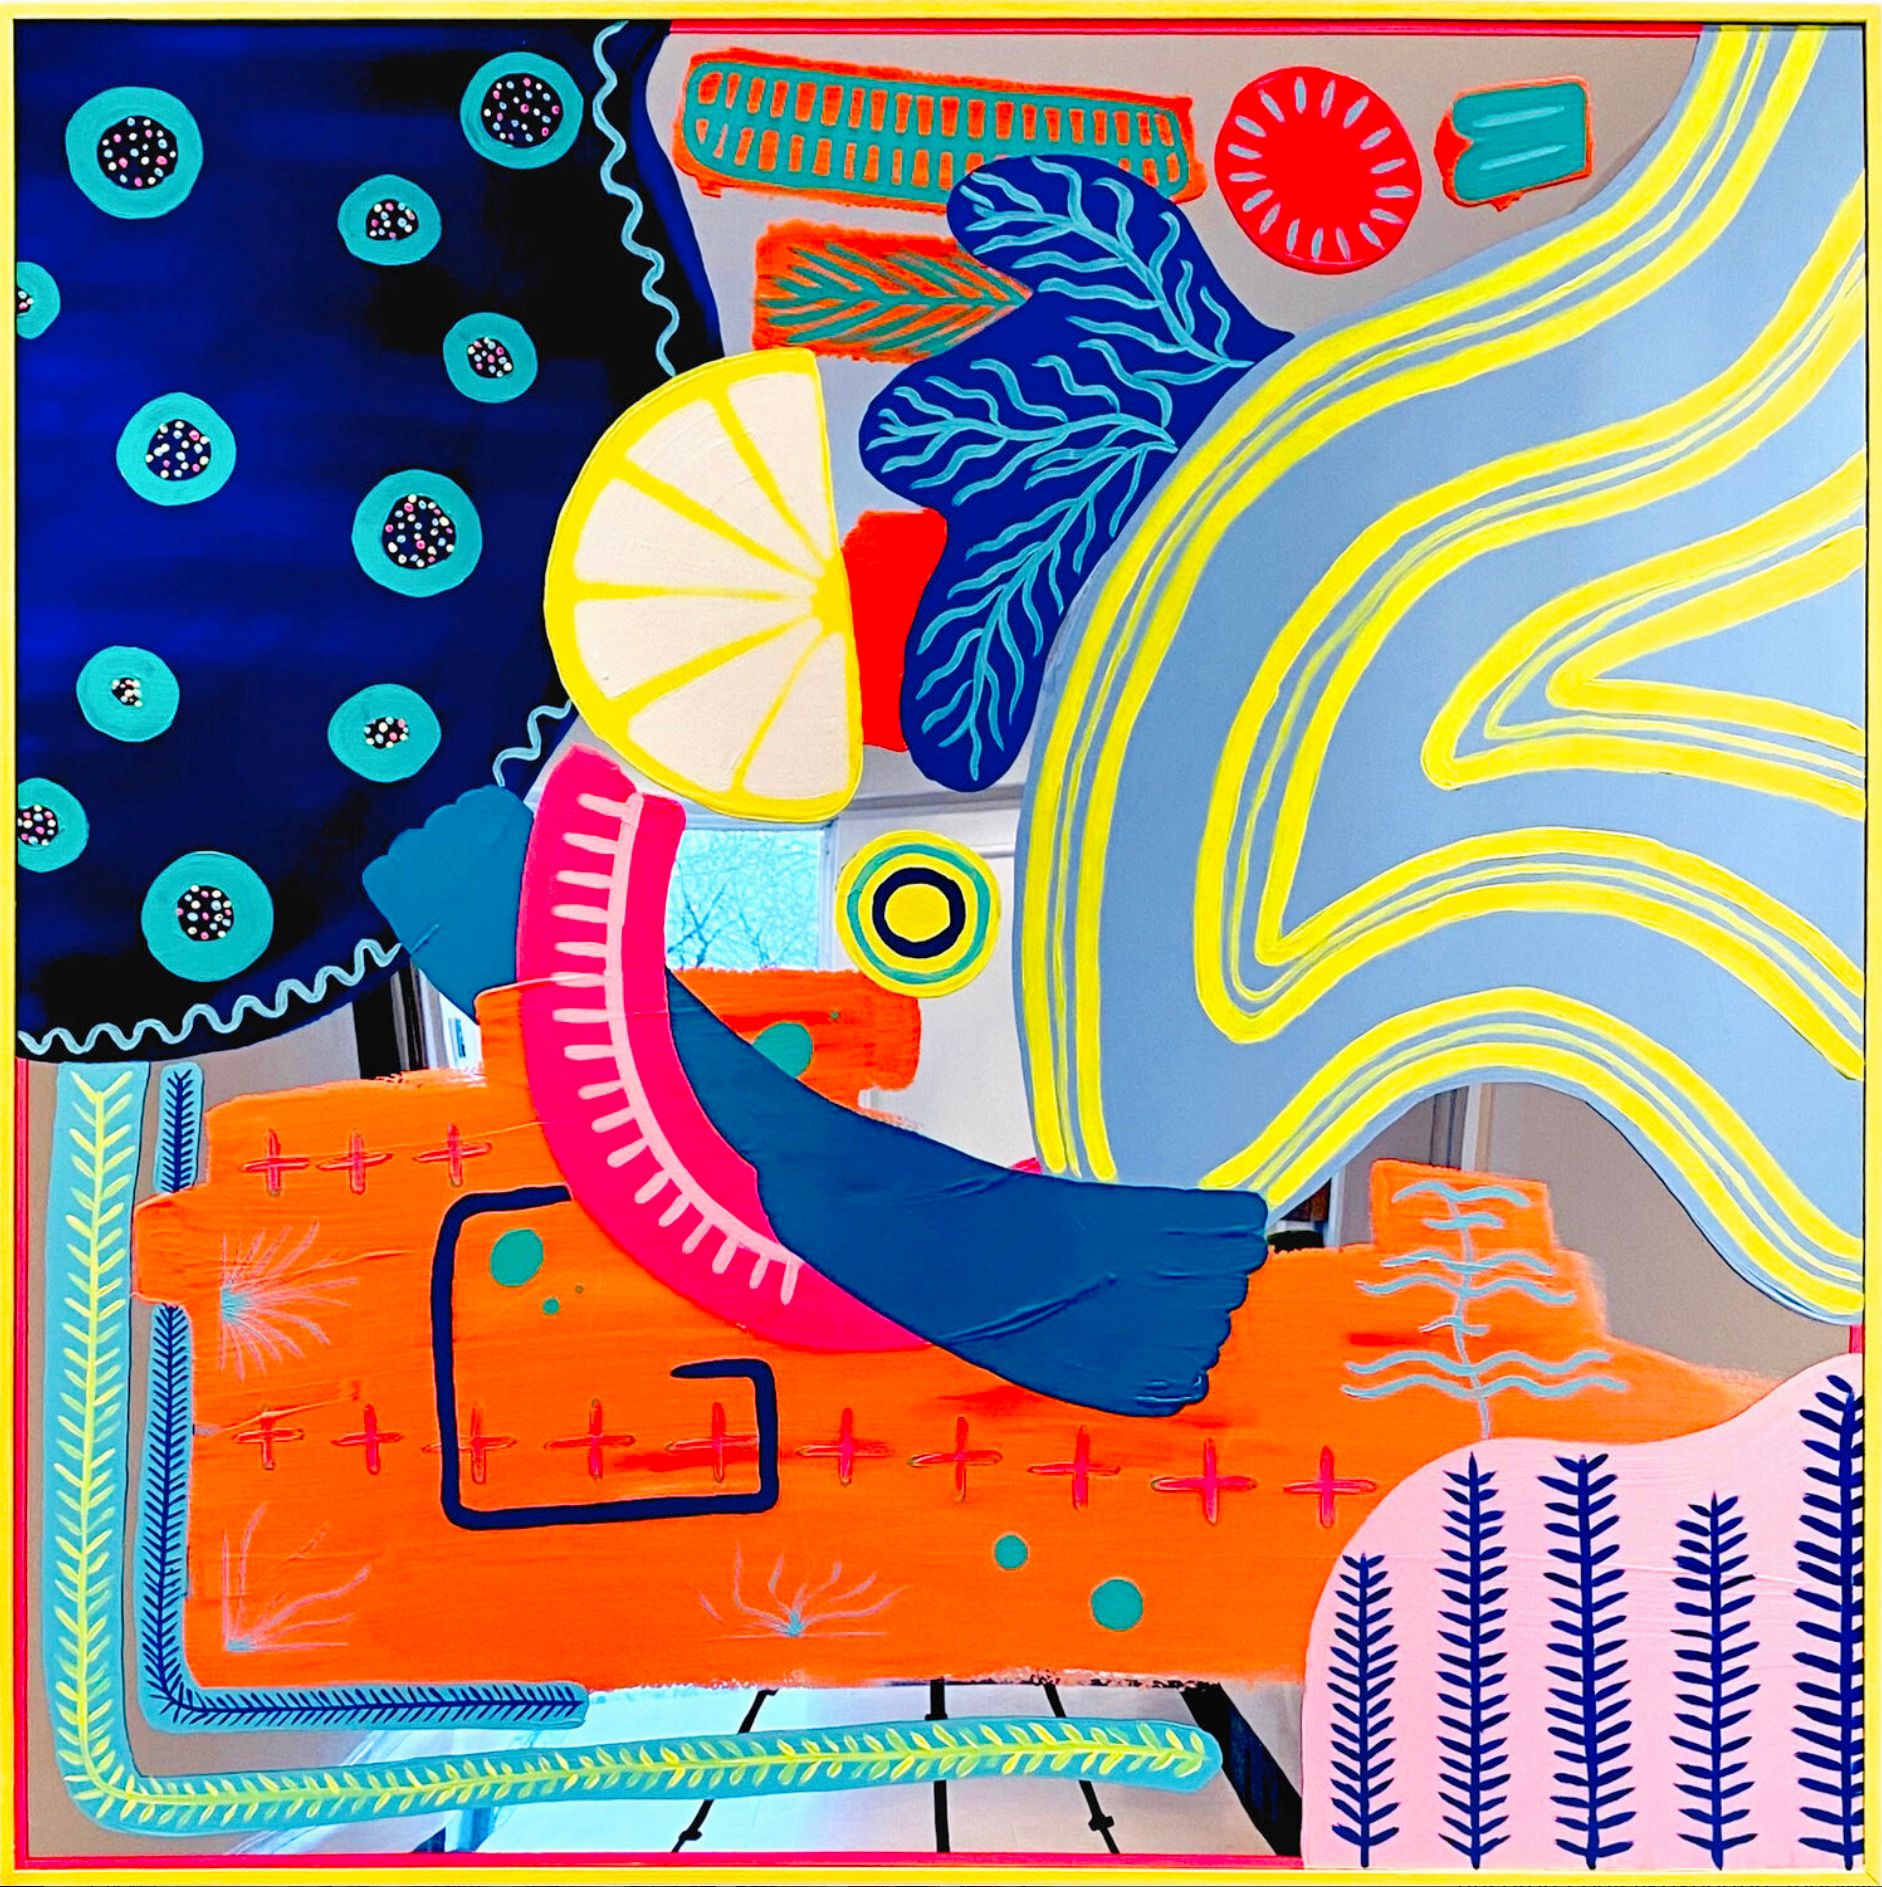 Isabelle Derecque, "La gaseosa que cayó del barco" Cuadro colorista, pintado en un misterioso lugar coloreado sobre espejo plexi en estilo pop-up con colores alegres y enérgicos. Visualizado a través de la geometría, las perspectivas, los contrastes y los reflejos.